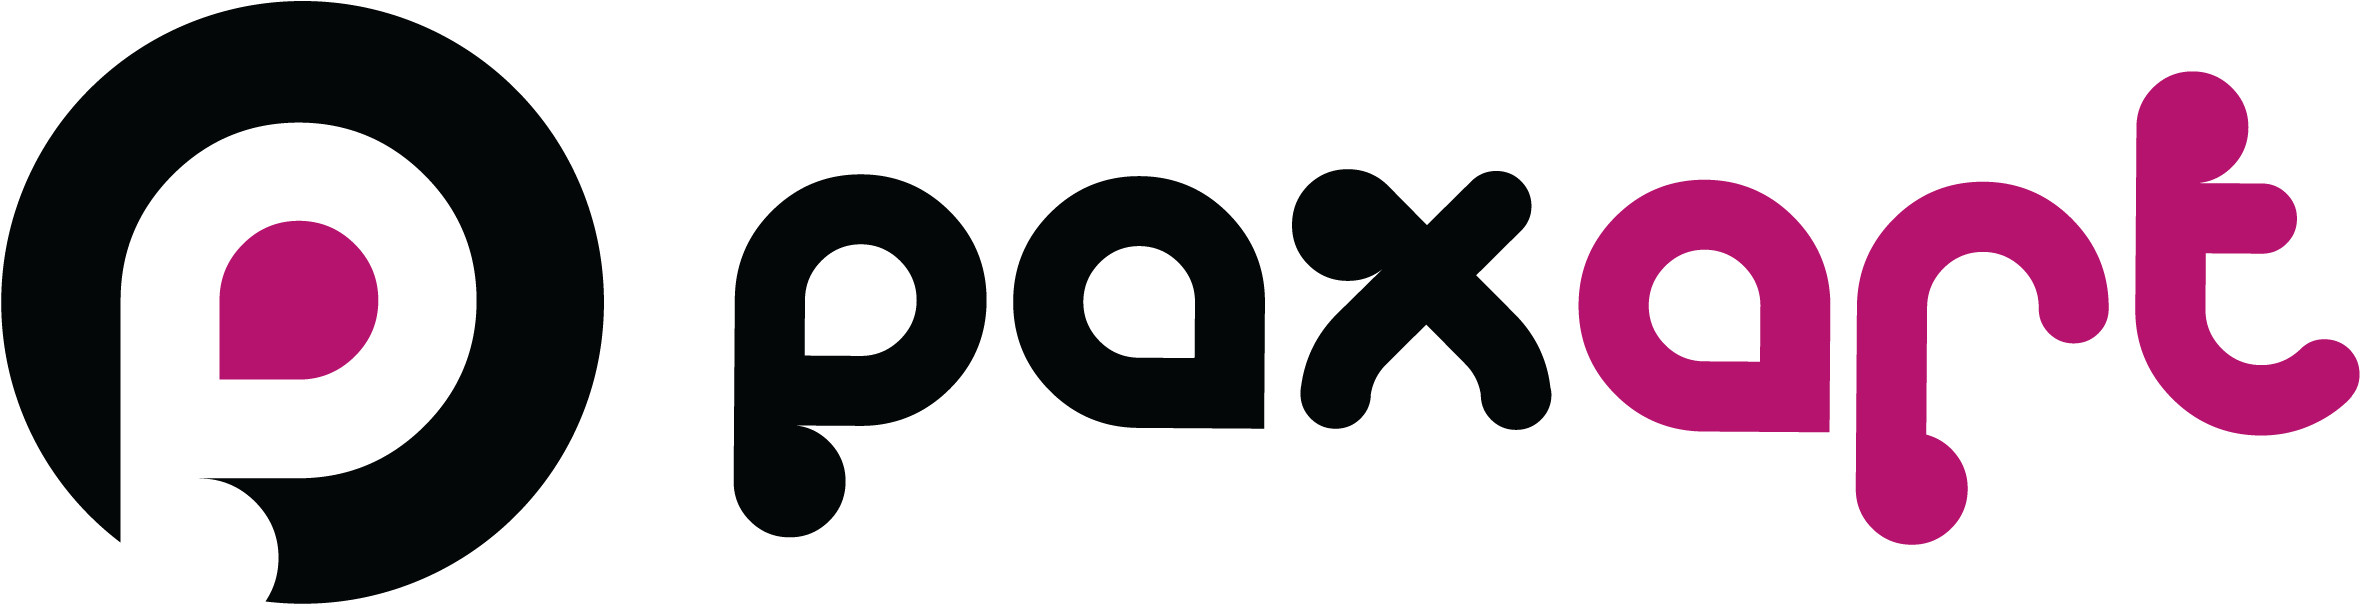 Paxart Logo Design PNG